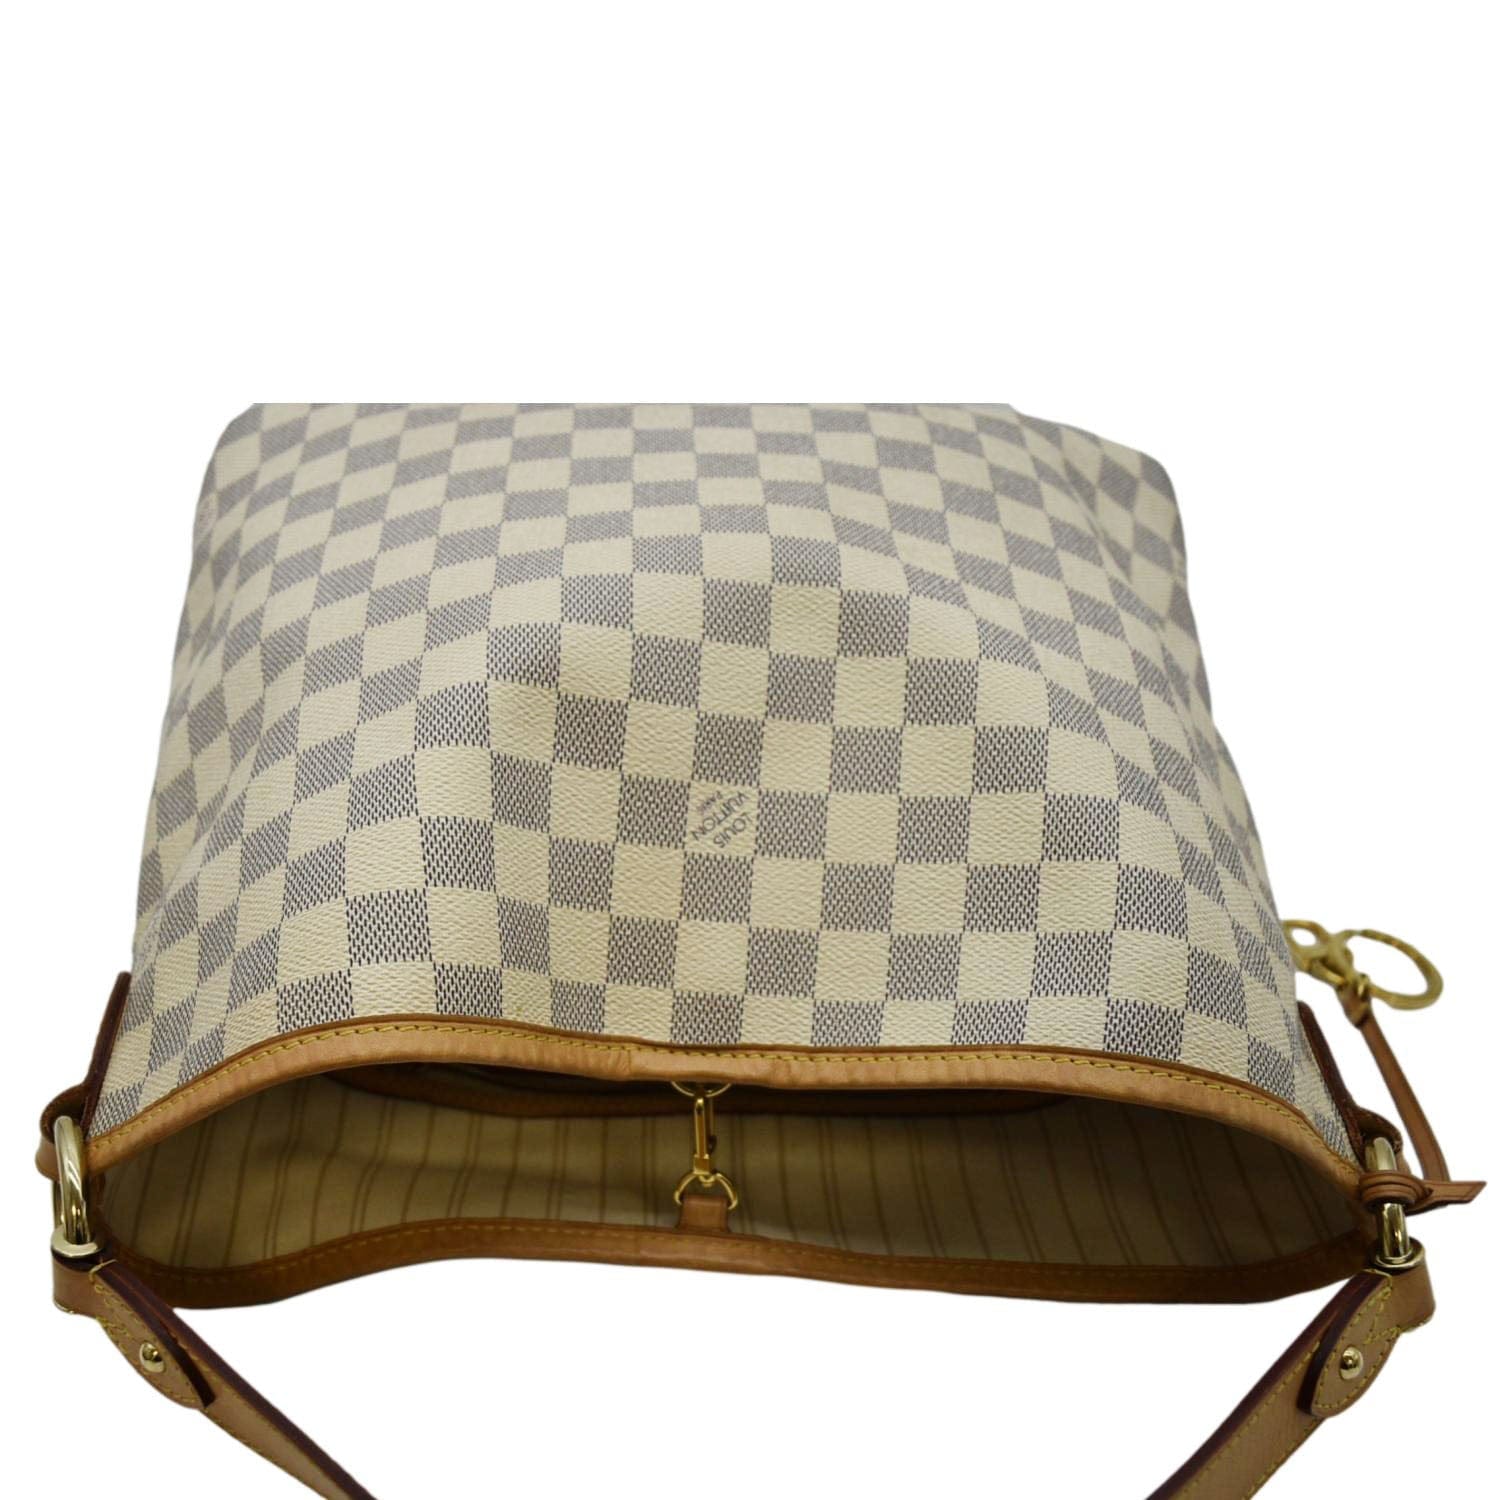 Louis Vuitton Damier Ebene White Bags & Handbags for Women for